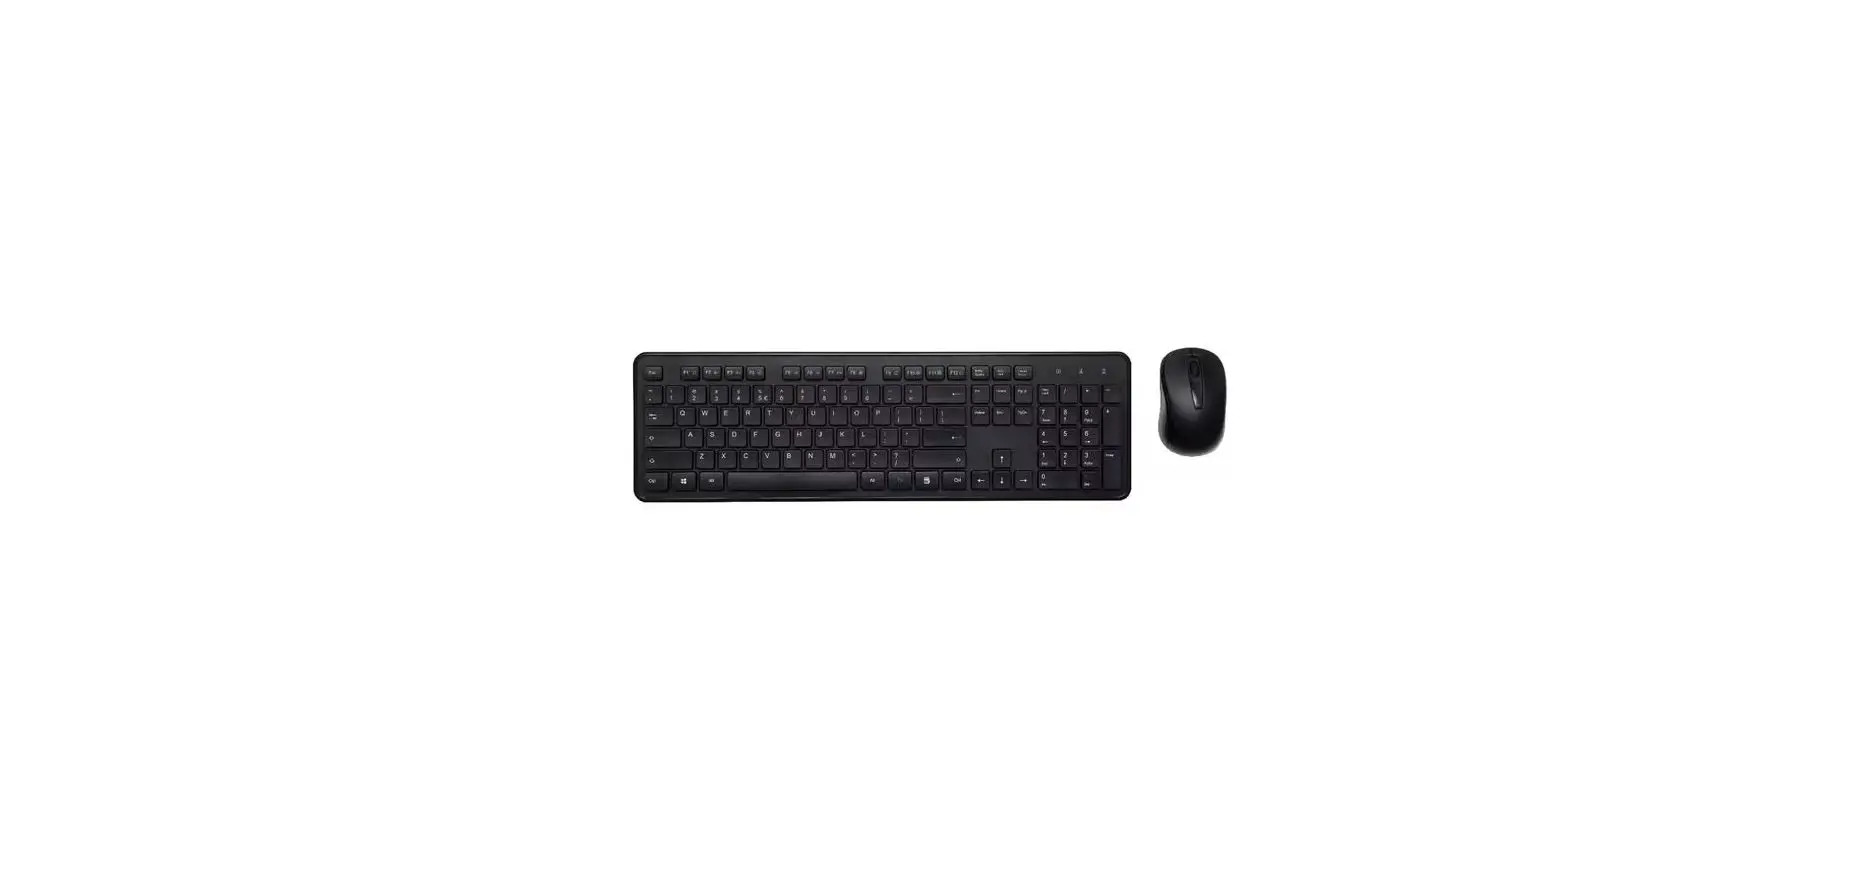 KEJICOMBO Wireless Keyboard and Mouse